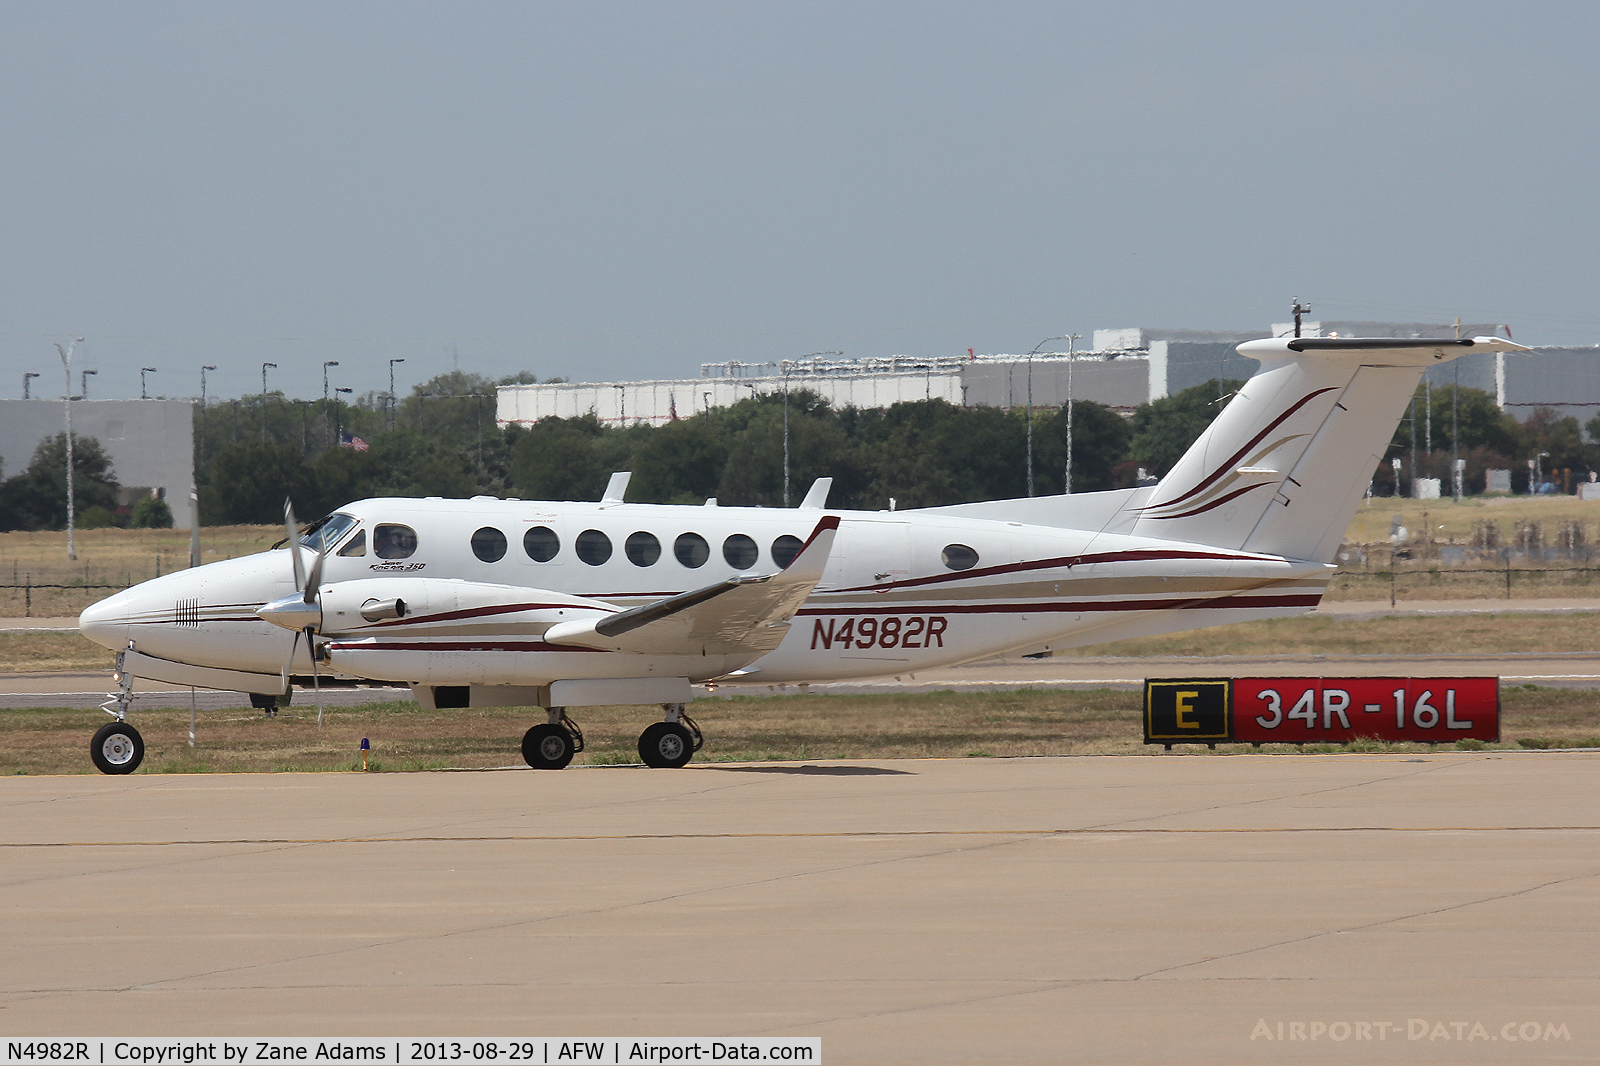 N4982R, 1998 Beech Super King Air 350 C/N FL-224, At Alliance Airport - Ft. Worth, TX